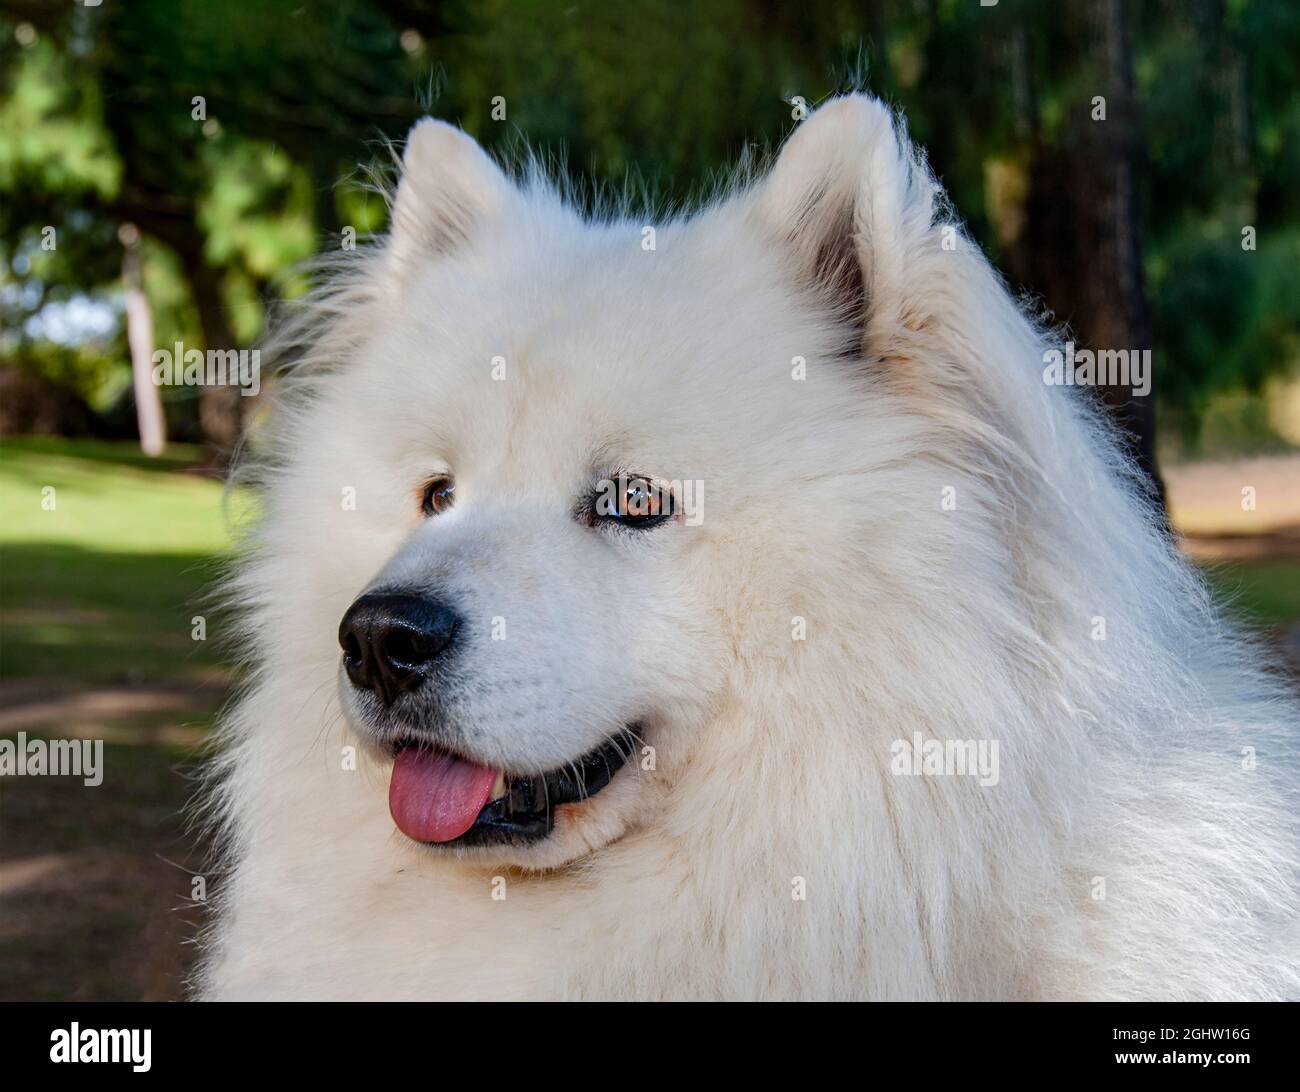 Portrait of a white Samoyed dog Stock Photo